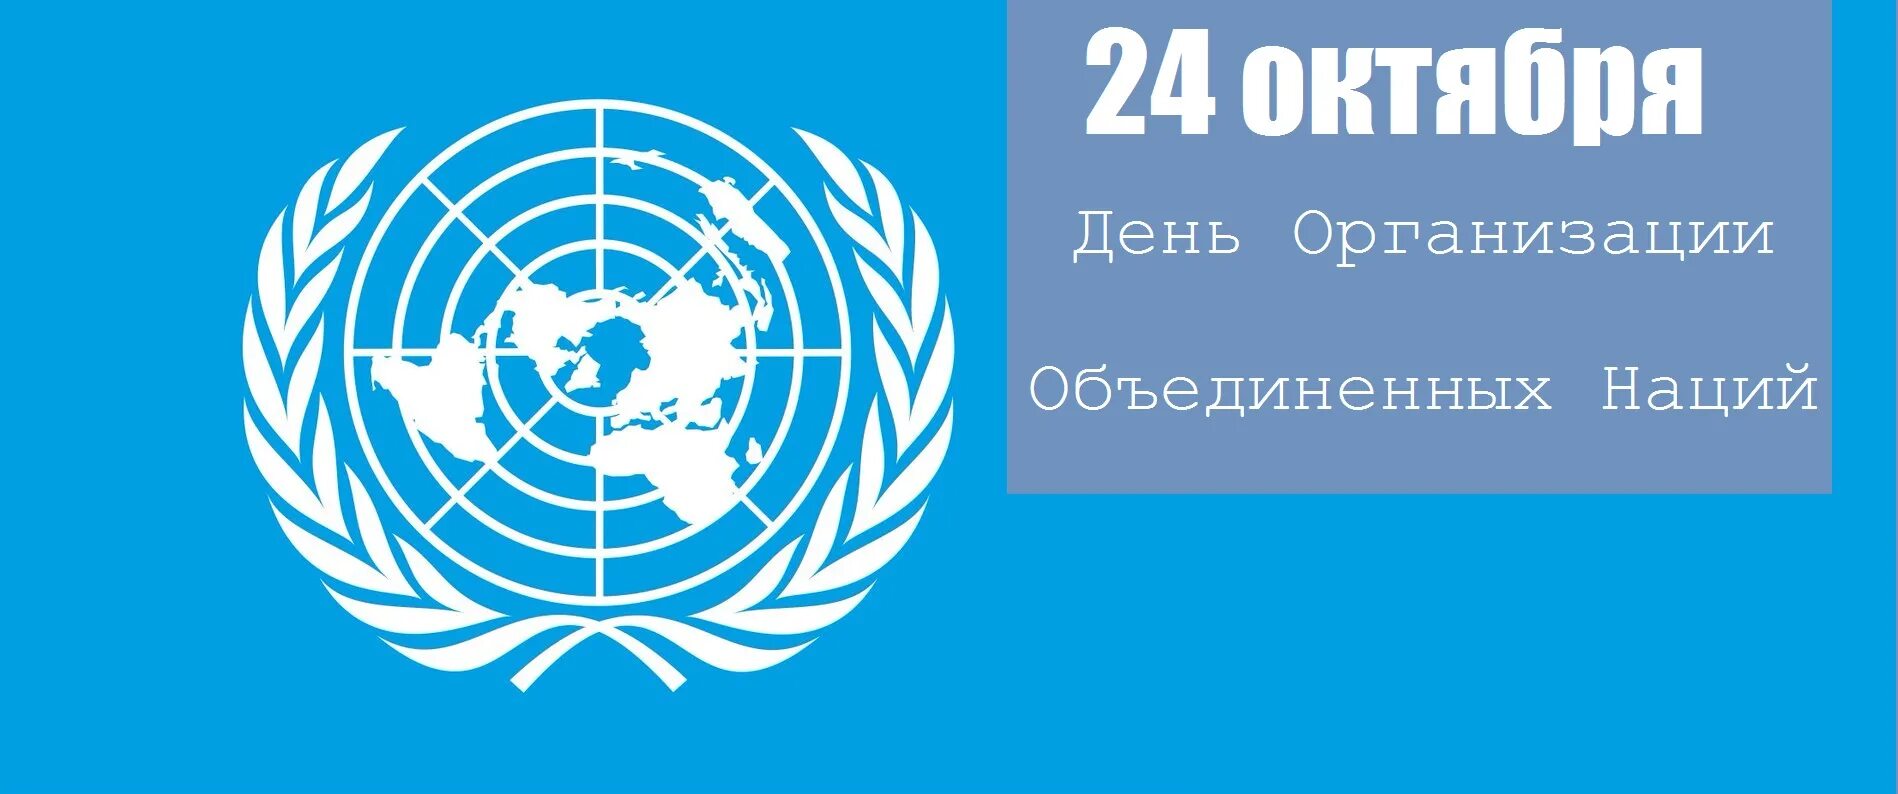 Всемирные организации оон. День ООН 24 октября. День организации Объединённых наций. Международные организации ООН. 24 День организации Объединенных наций.